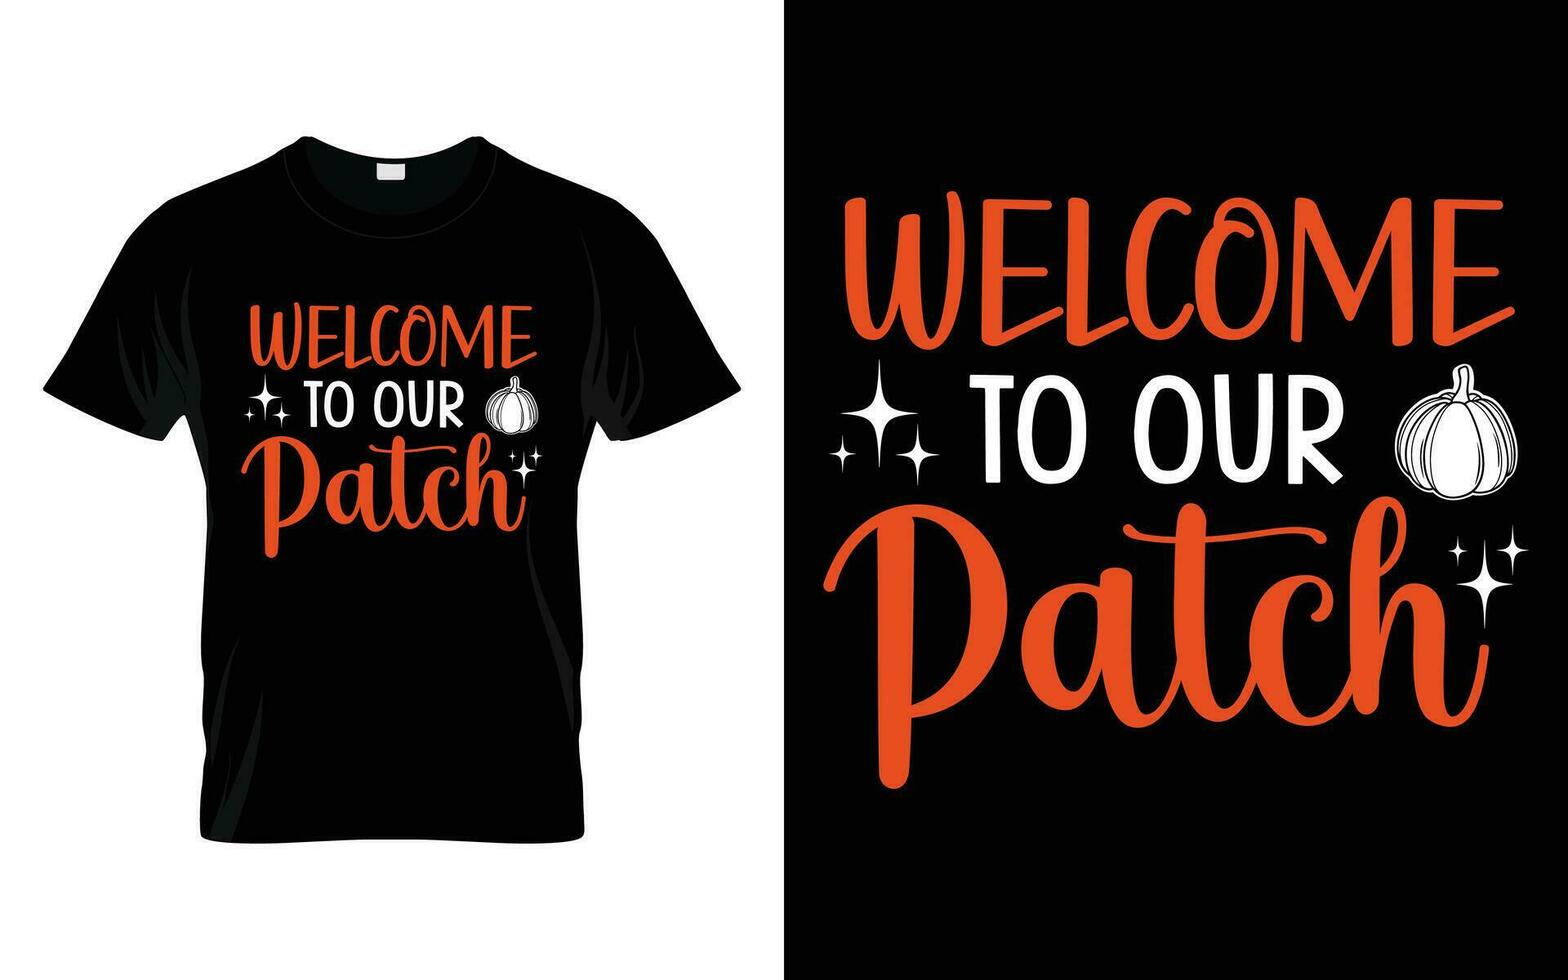 Bienvenido a nuestra parche contento acción de gracias otoño temporada camiseta vector